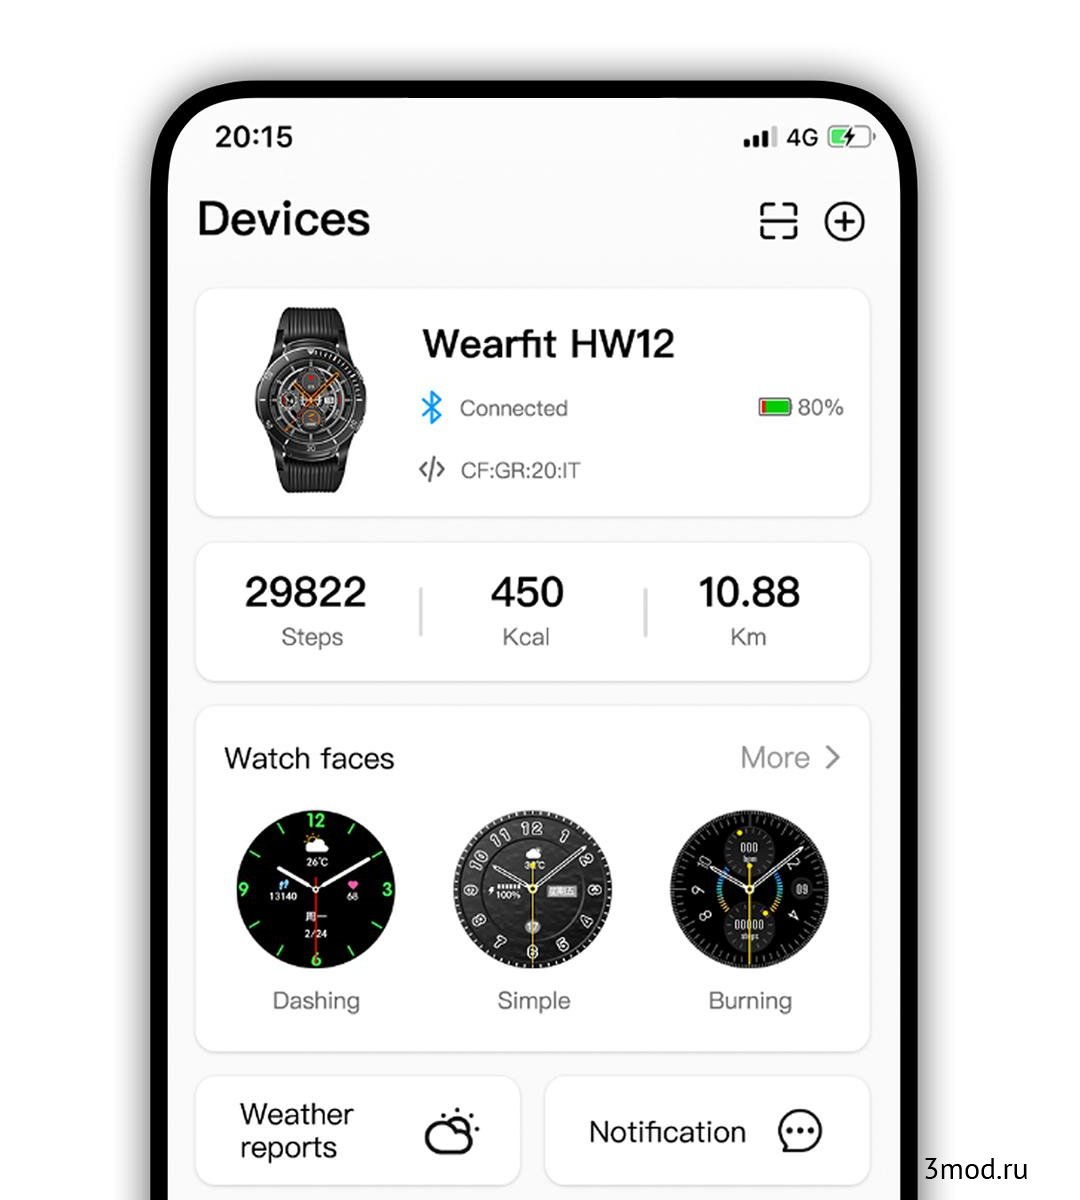 Wearfit pro часы приложение на русском языке